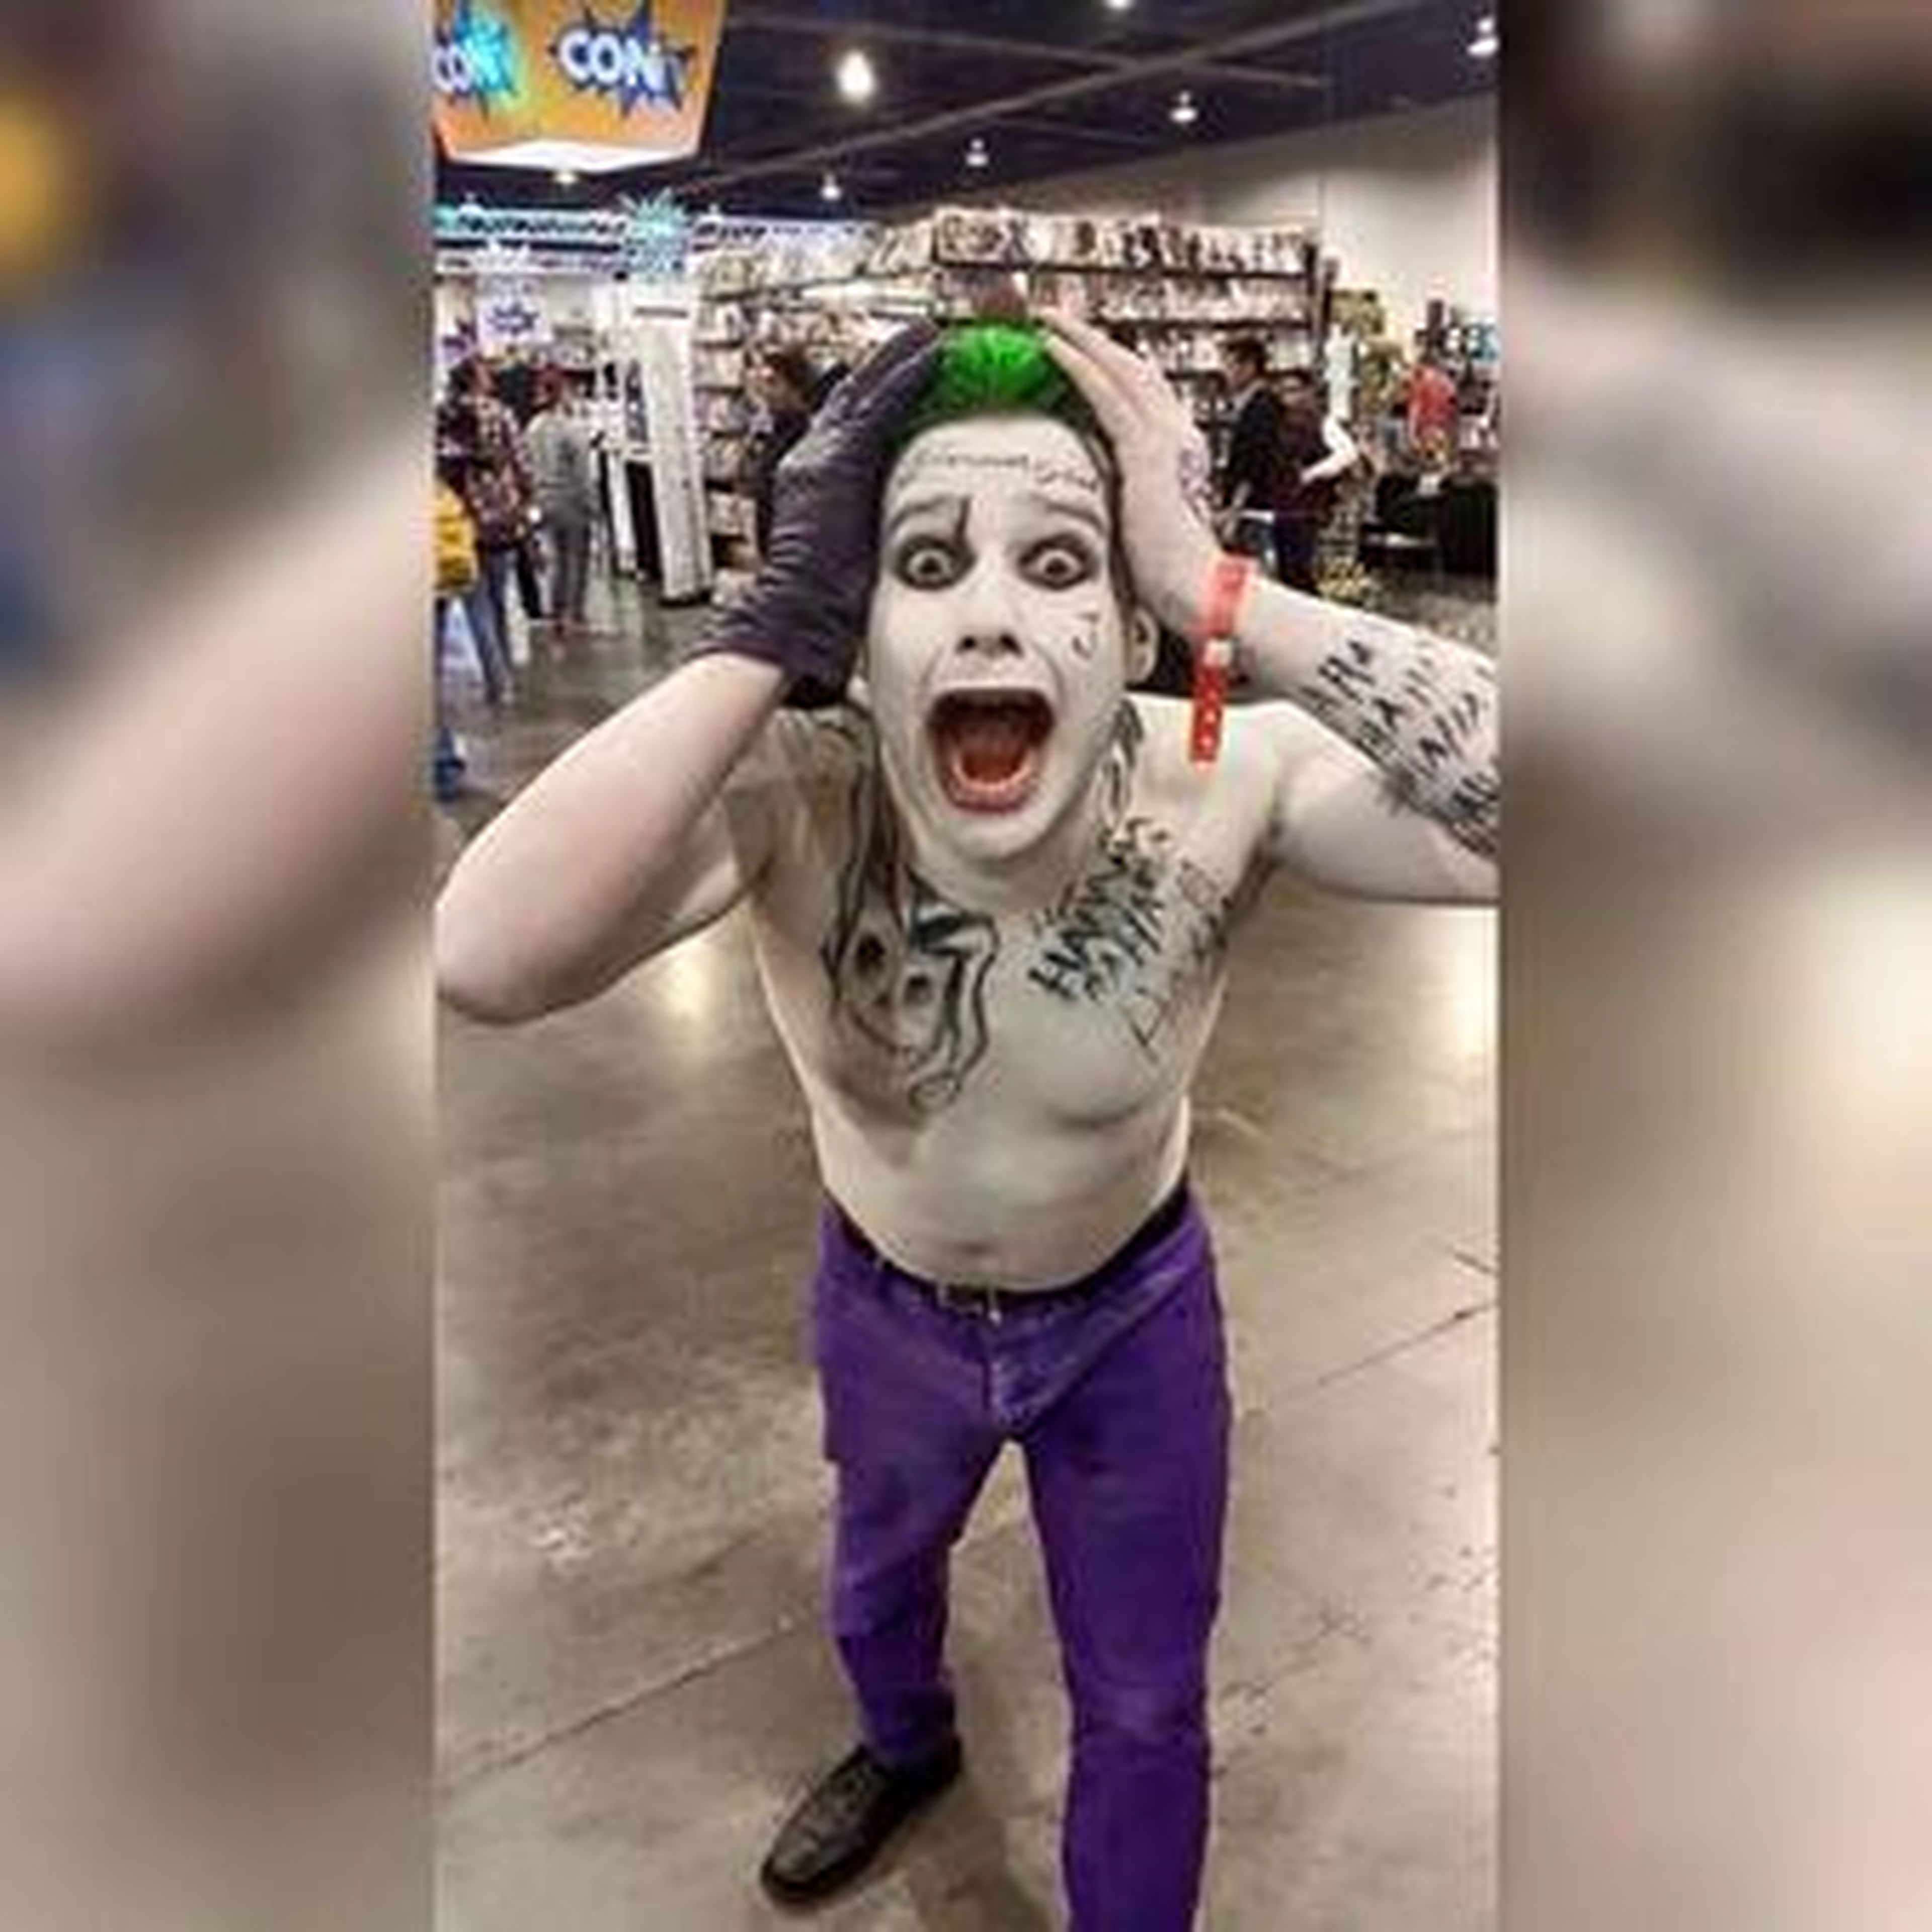 El Joker de Escuadrón Suicida ya tiene memes y reacciones